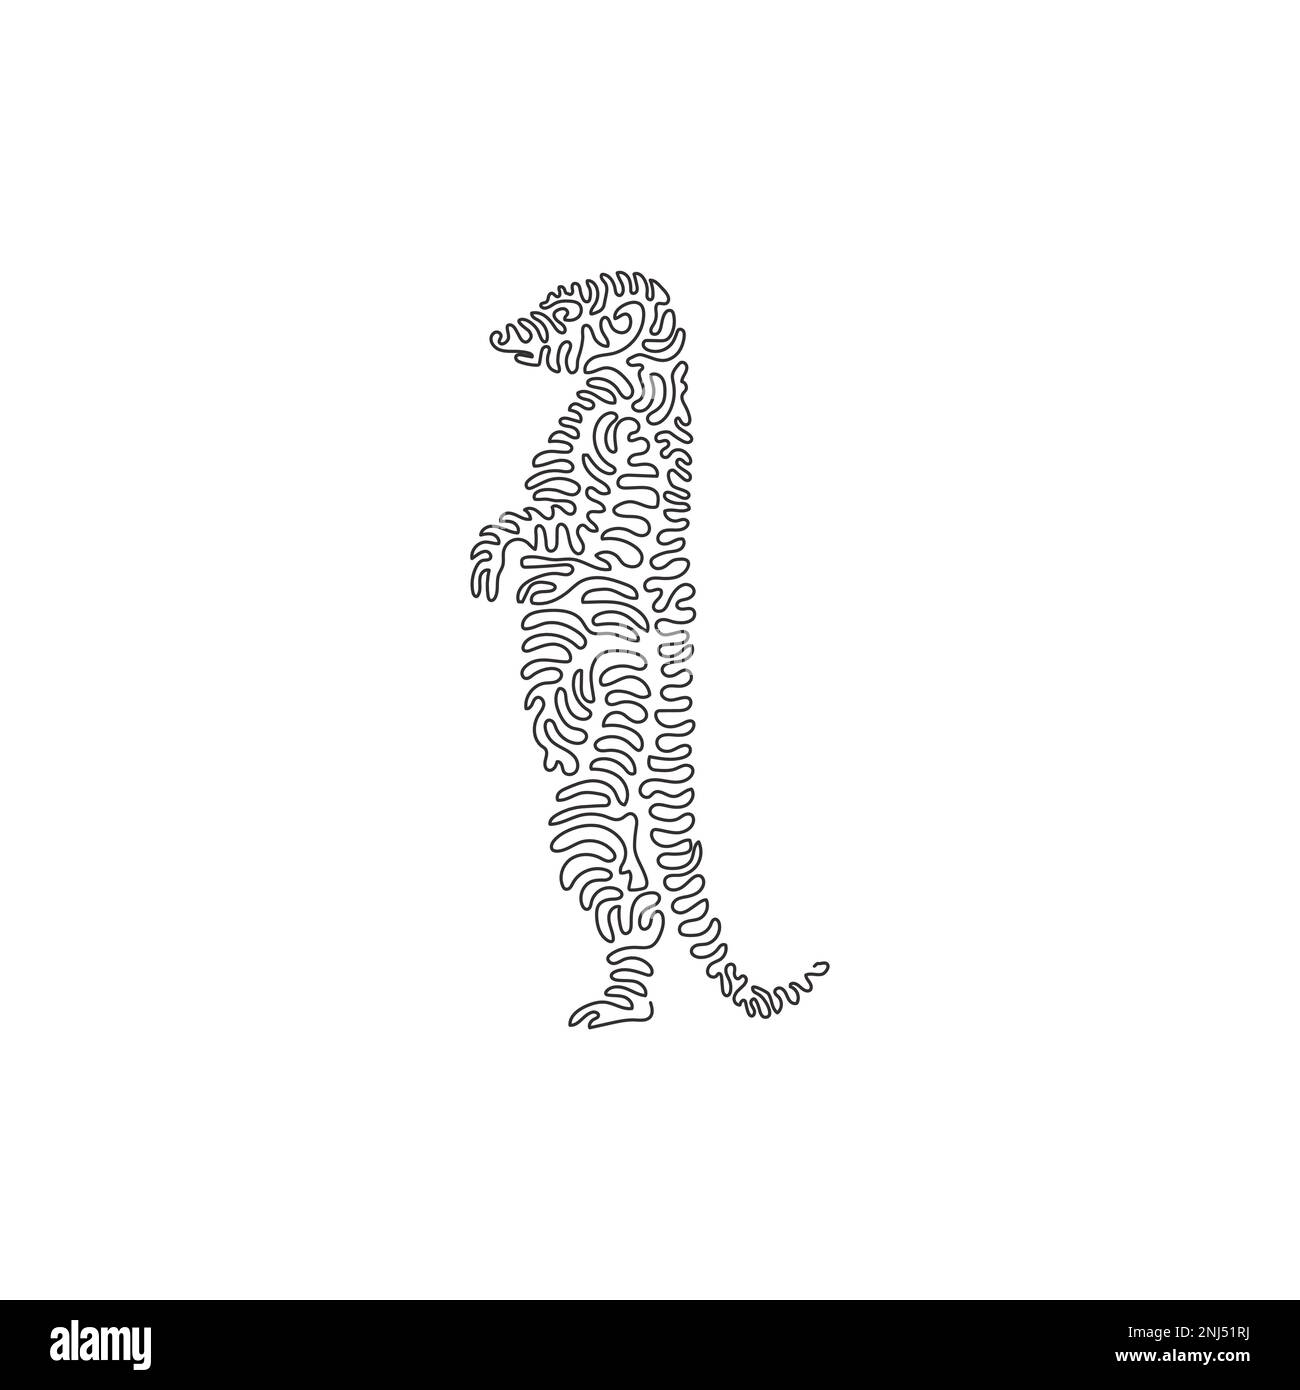 Courbe continue un dessin de ligne de mierkat debout mierkat courbe abstraite art Illustration d'un vecteur de contour modifiable sur une seule ligne de meerkat adorable Illustration de Vecteur